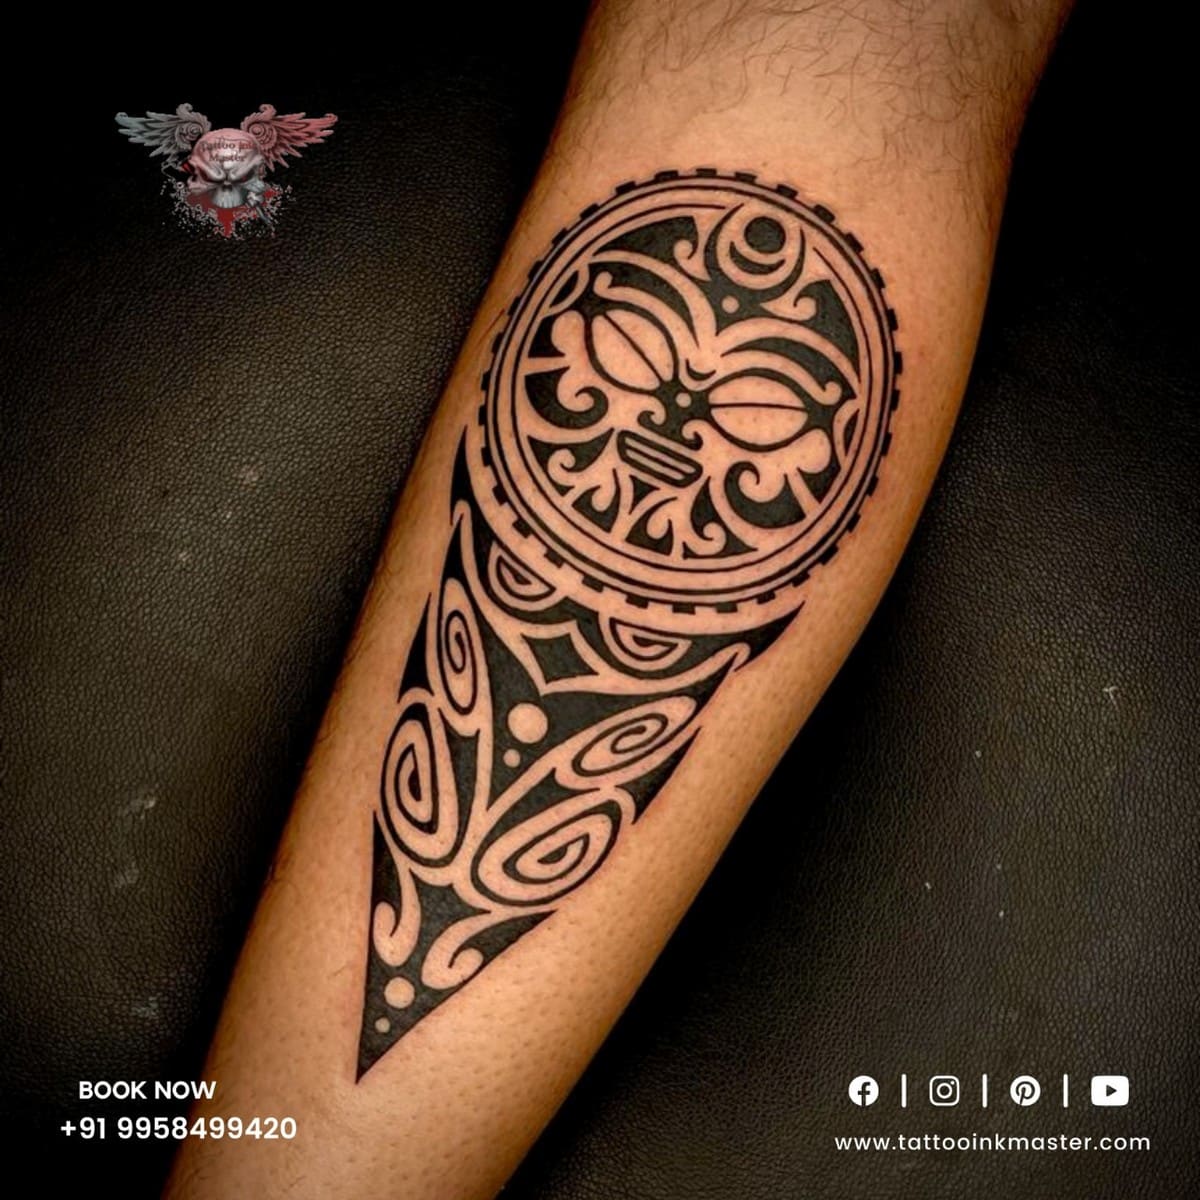 The Symmetric Tribal Tattoo | Tattoo Ink Master